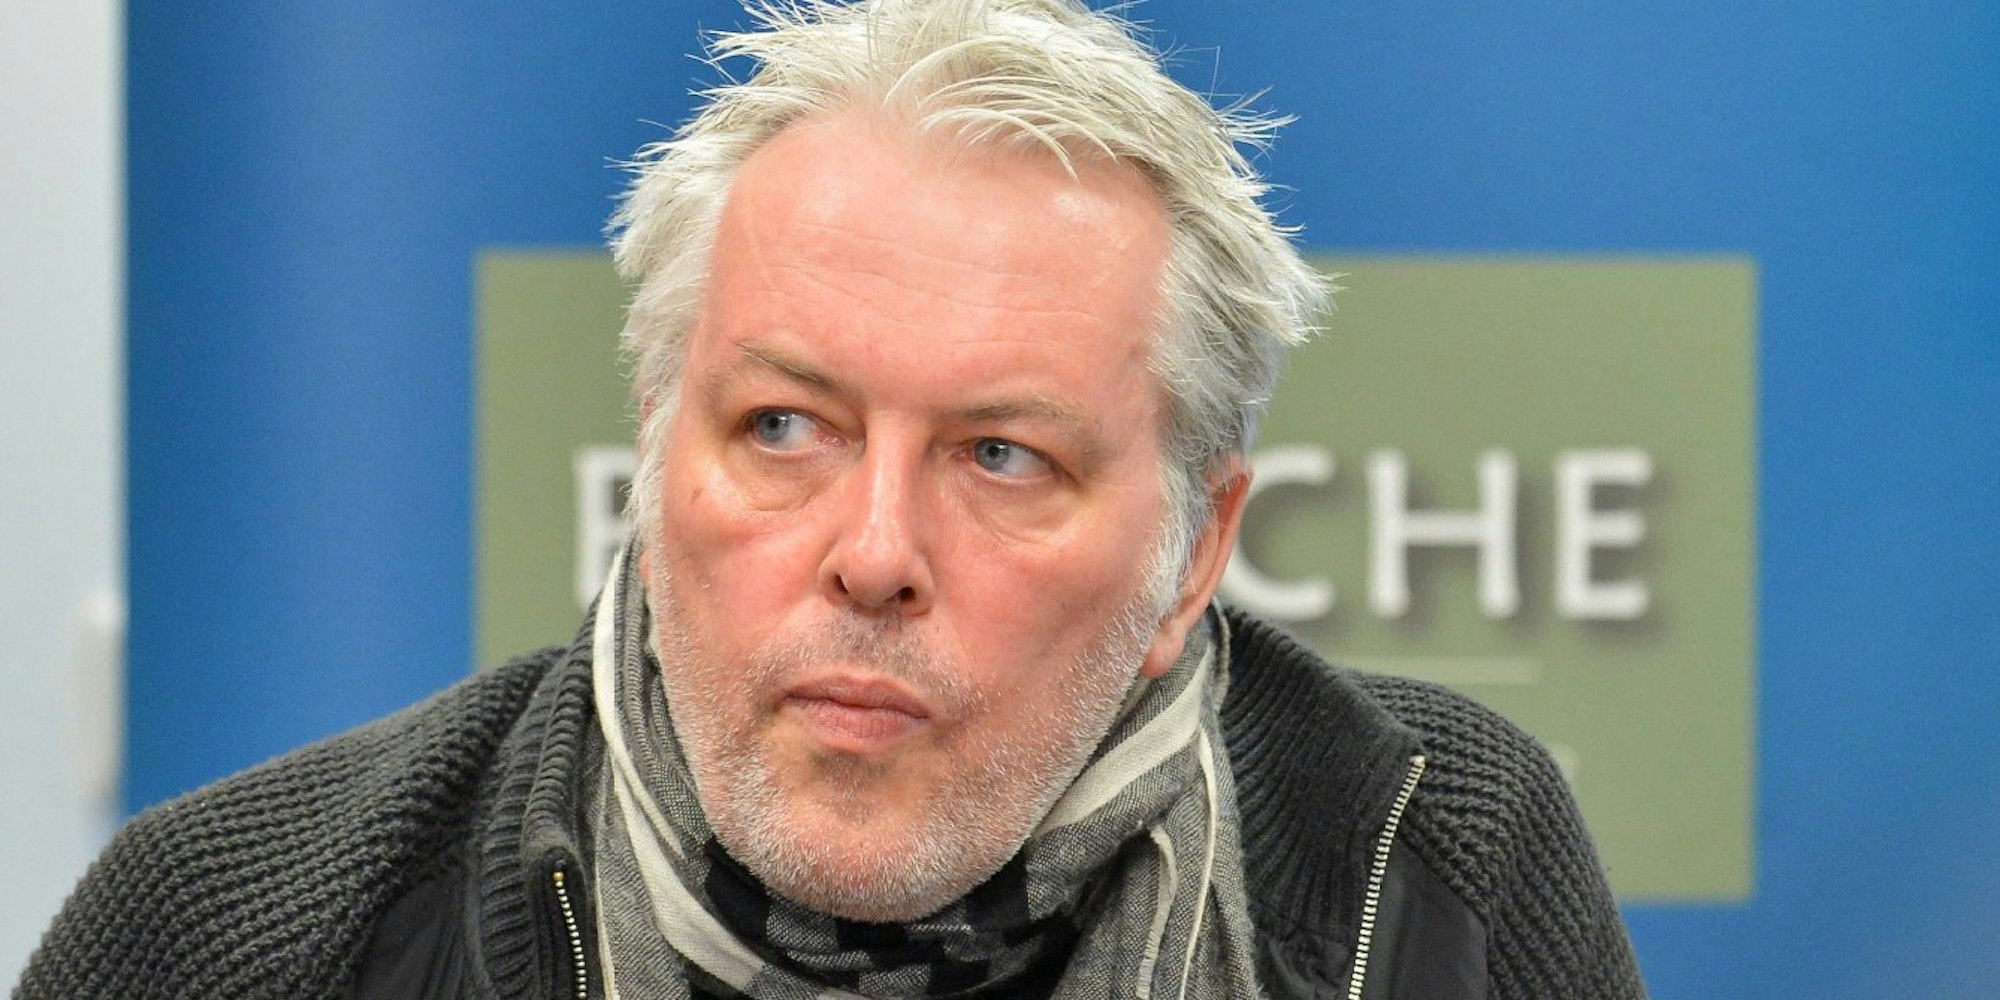 Jochen Hülder ist im Alter von 57 Jahren gestorben.